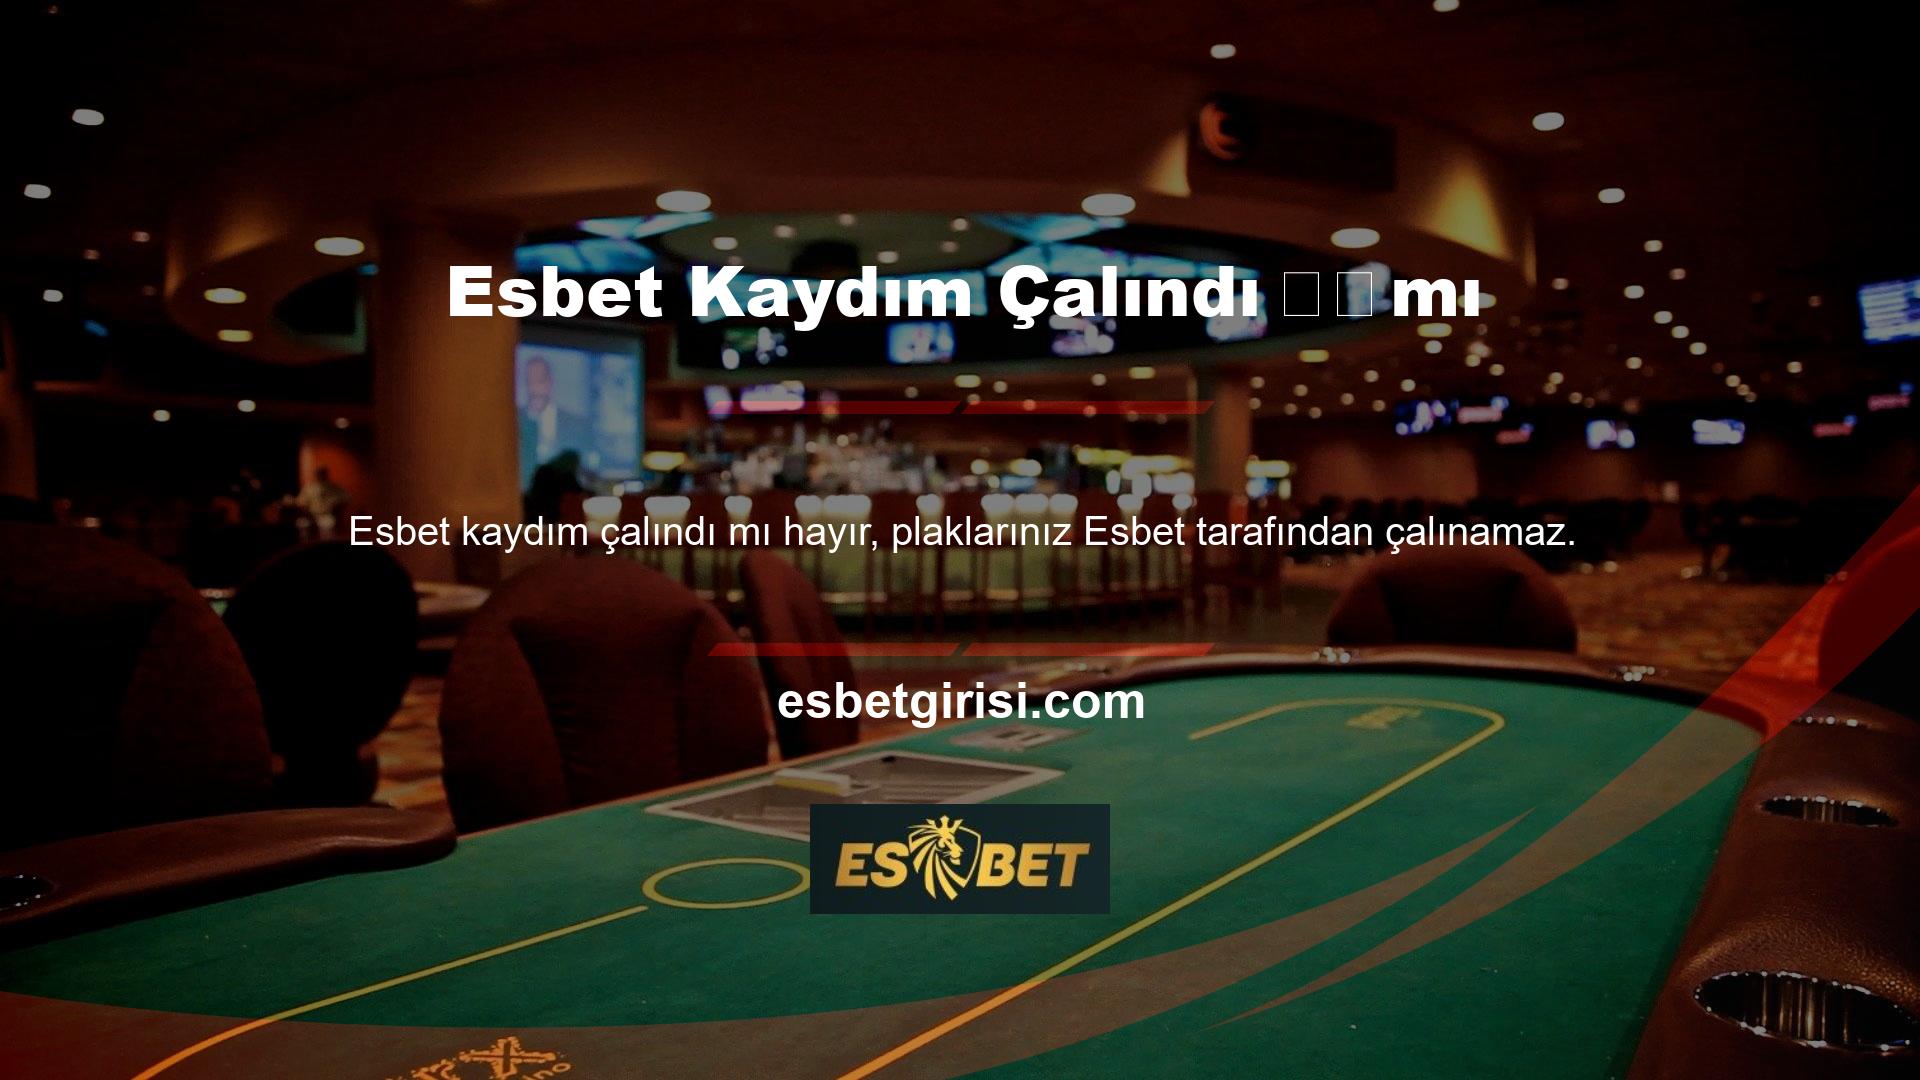 Esbet Casino web sitesinde bir süredir bağlantı hataları yaşadıktan sonra zamanımı boşa harcıyorum